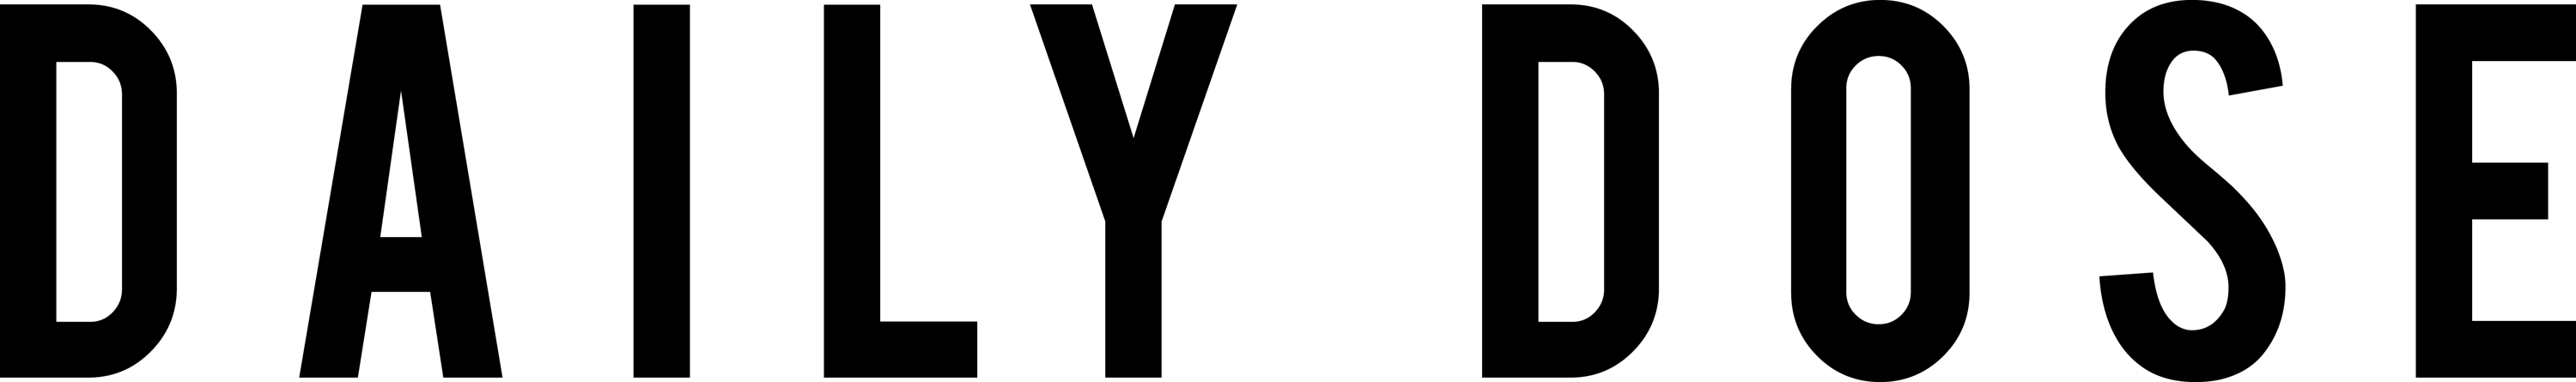 daily dose logo